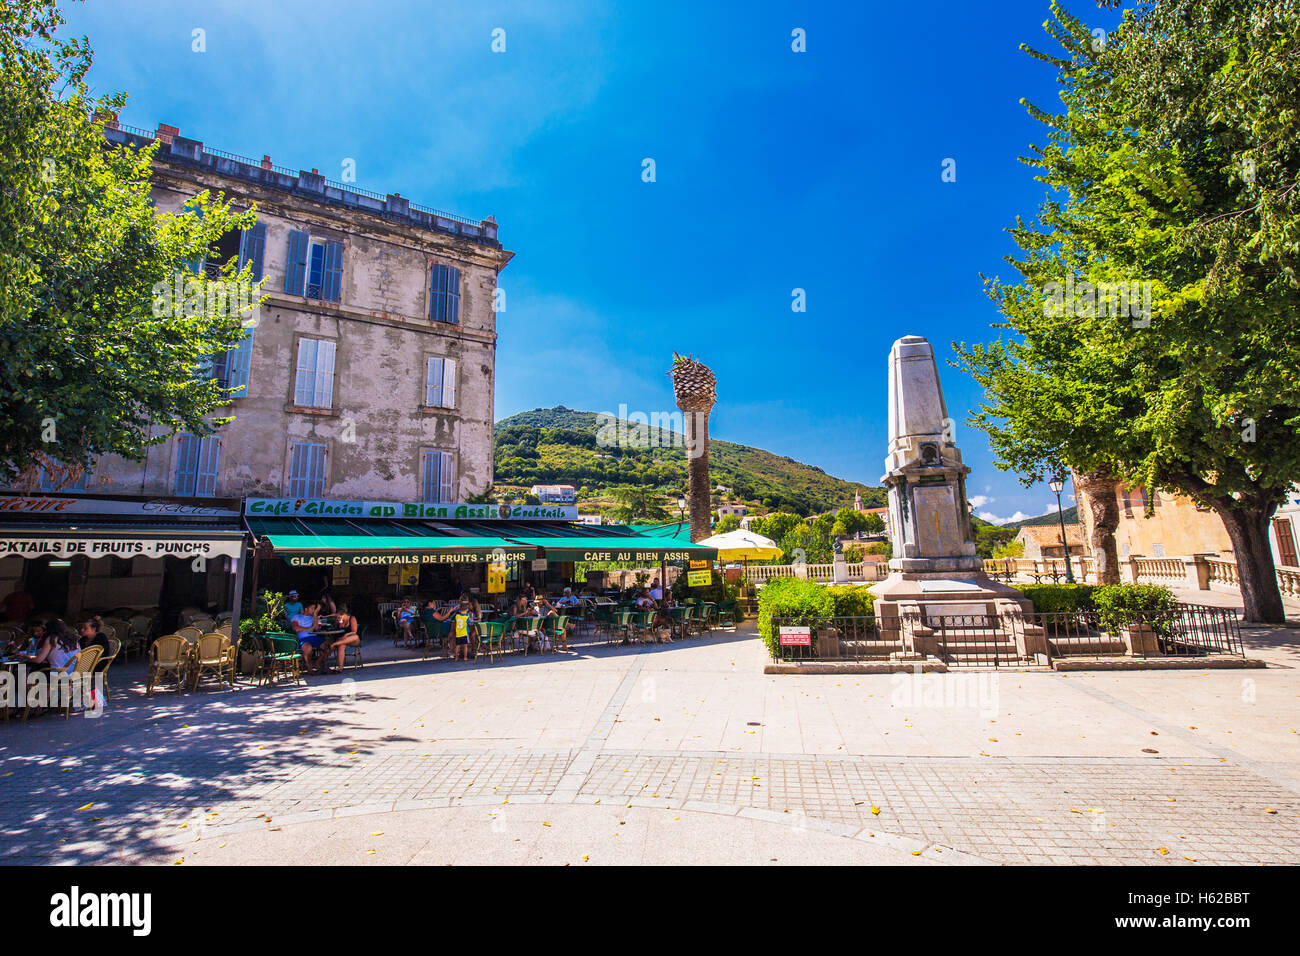 SARTENE, CORSE - 29 août 2016 - Centre de la vieille ville de la ville de Sartene, Corse, France, Europe. Banque D'Images